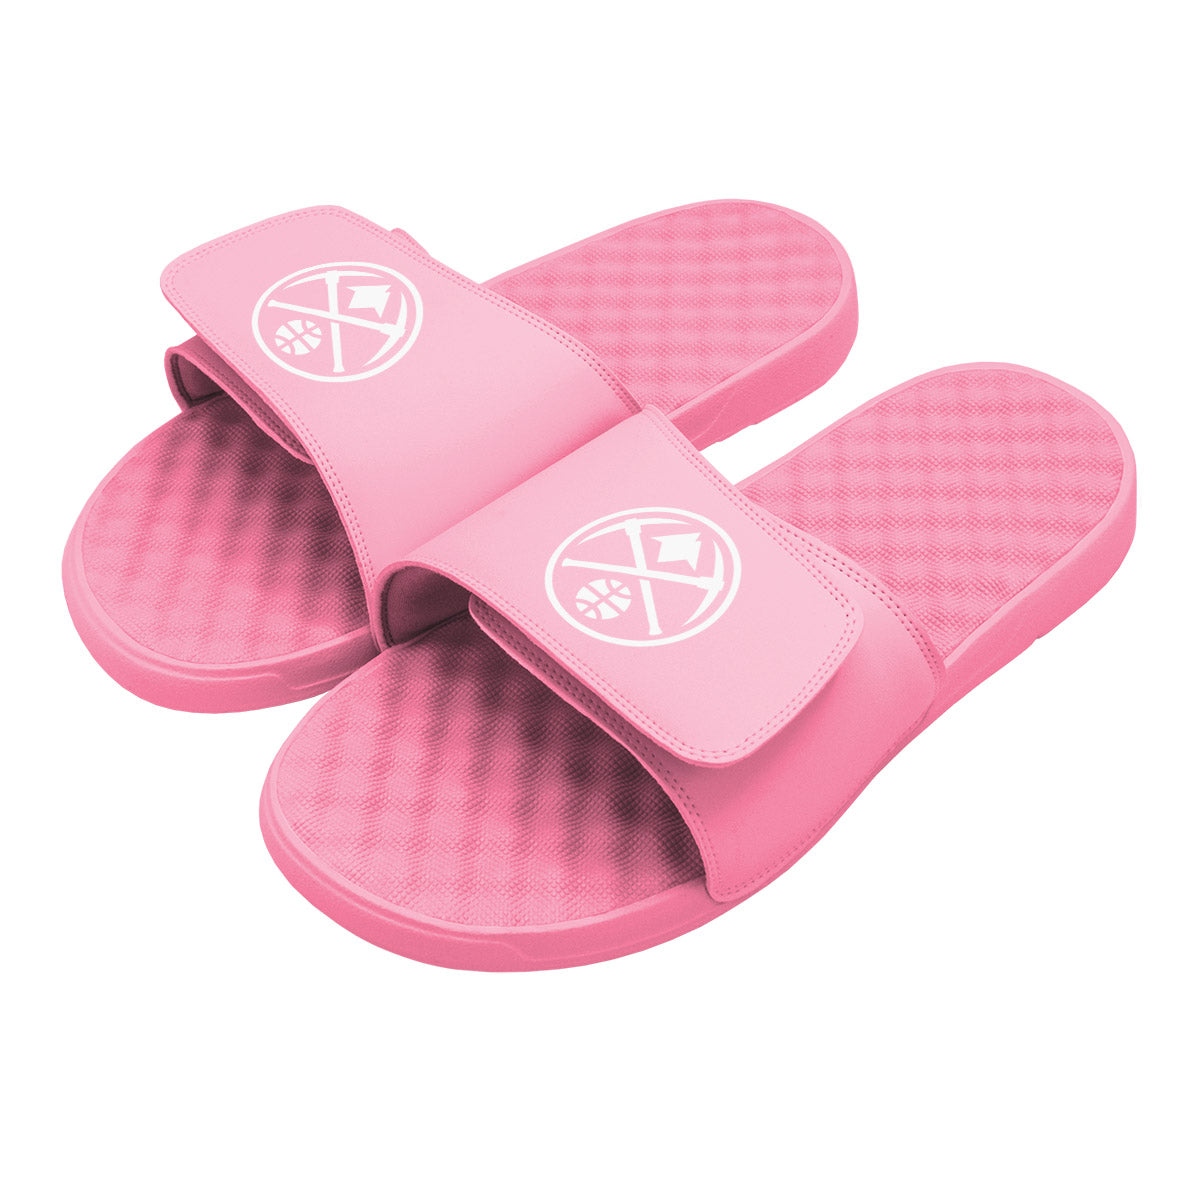 Denver Nuggets Primary Pink Slides